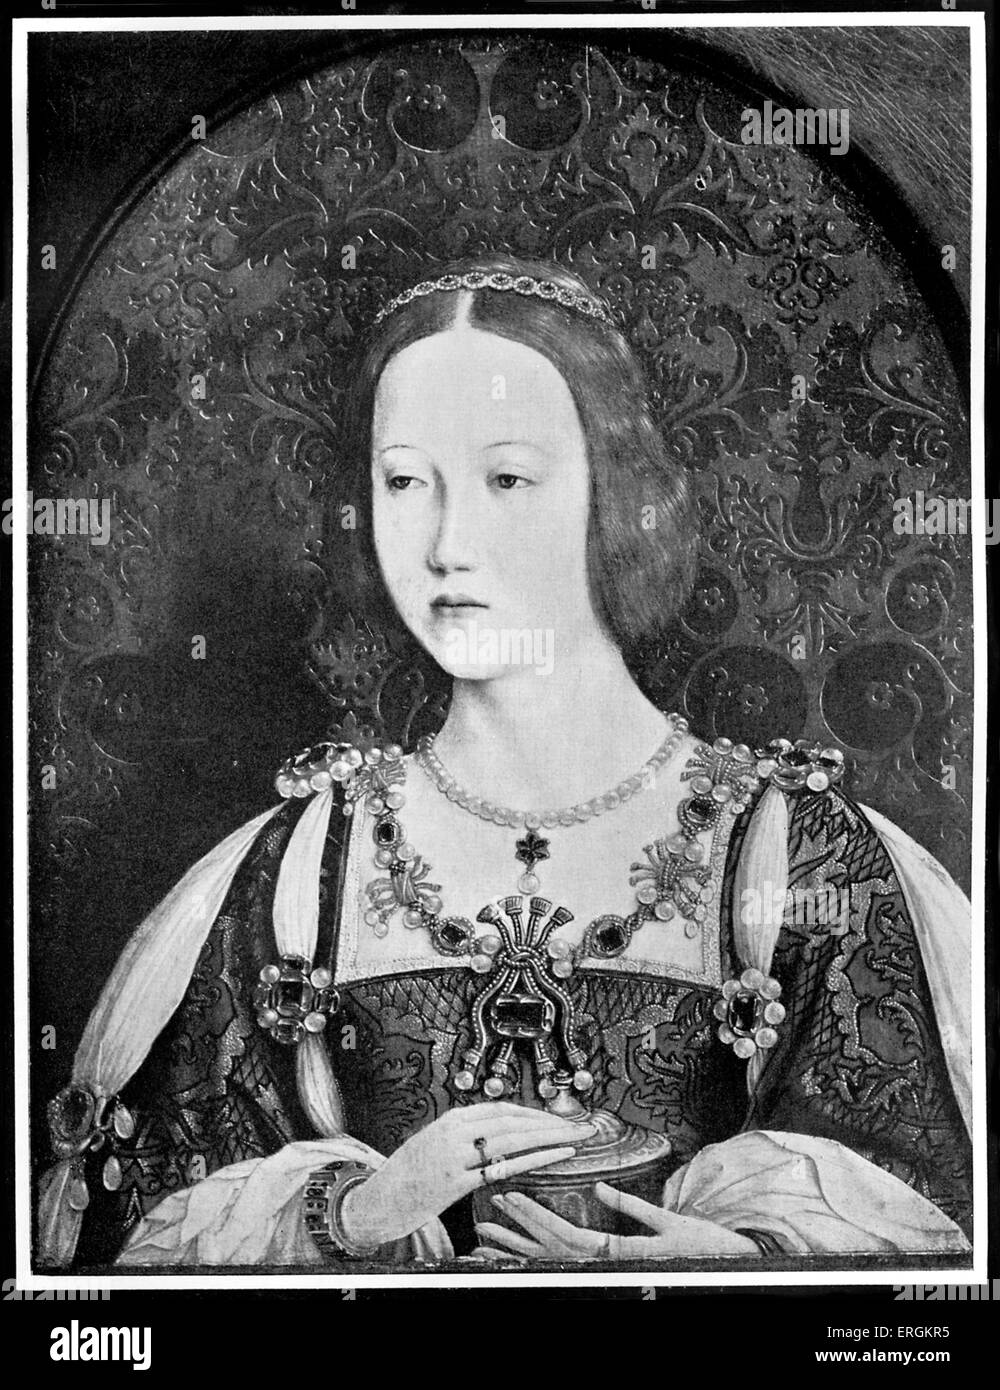 La principessa Maria Tudor (1496 - 1533). Regina consorte di Francia per un anno nel 1514 a seguito del matrimonio di Luigi XII (1462 - 1515). La sorella di Re Enrico VIII d'Inghilterra (1491 - 1547). Ritratto di Jehan Perreal (c. 1450 - 1530) nel 1514. Foto Stock